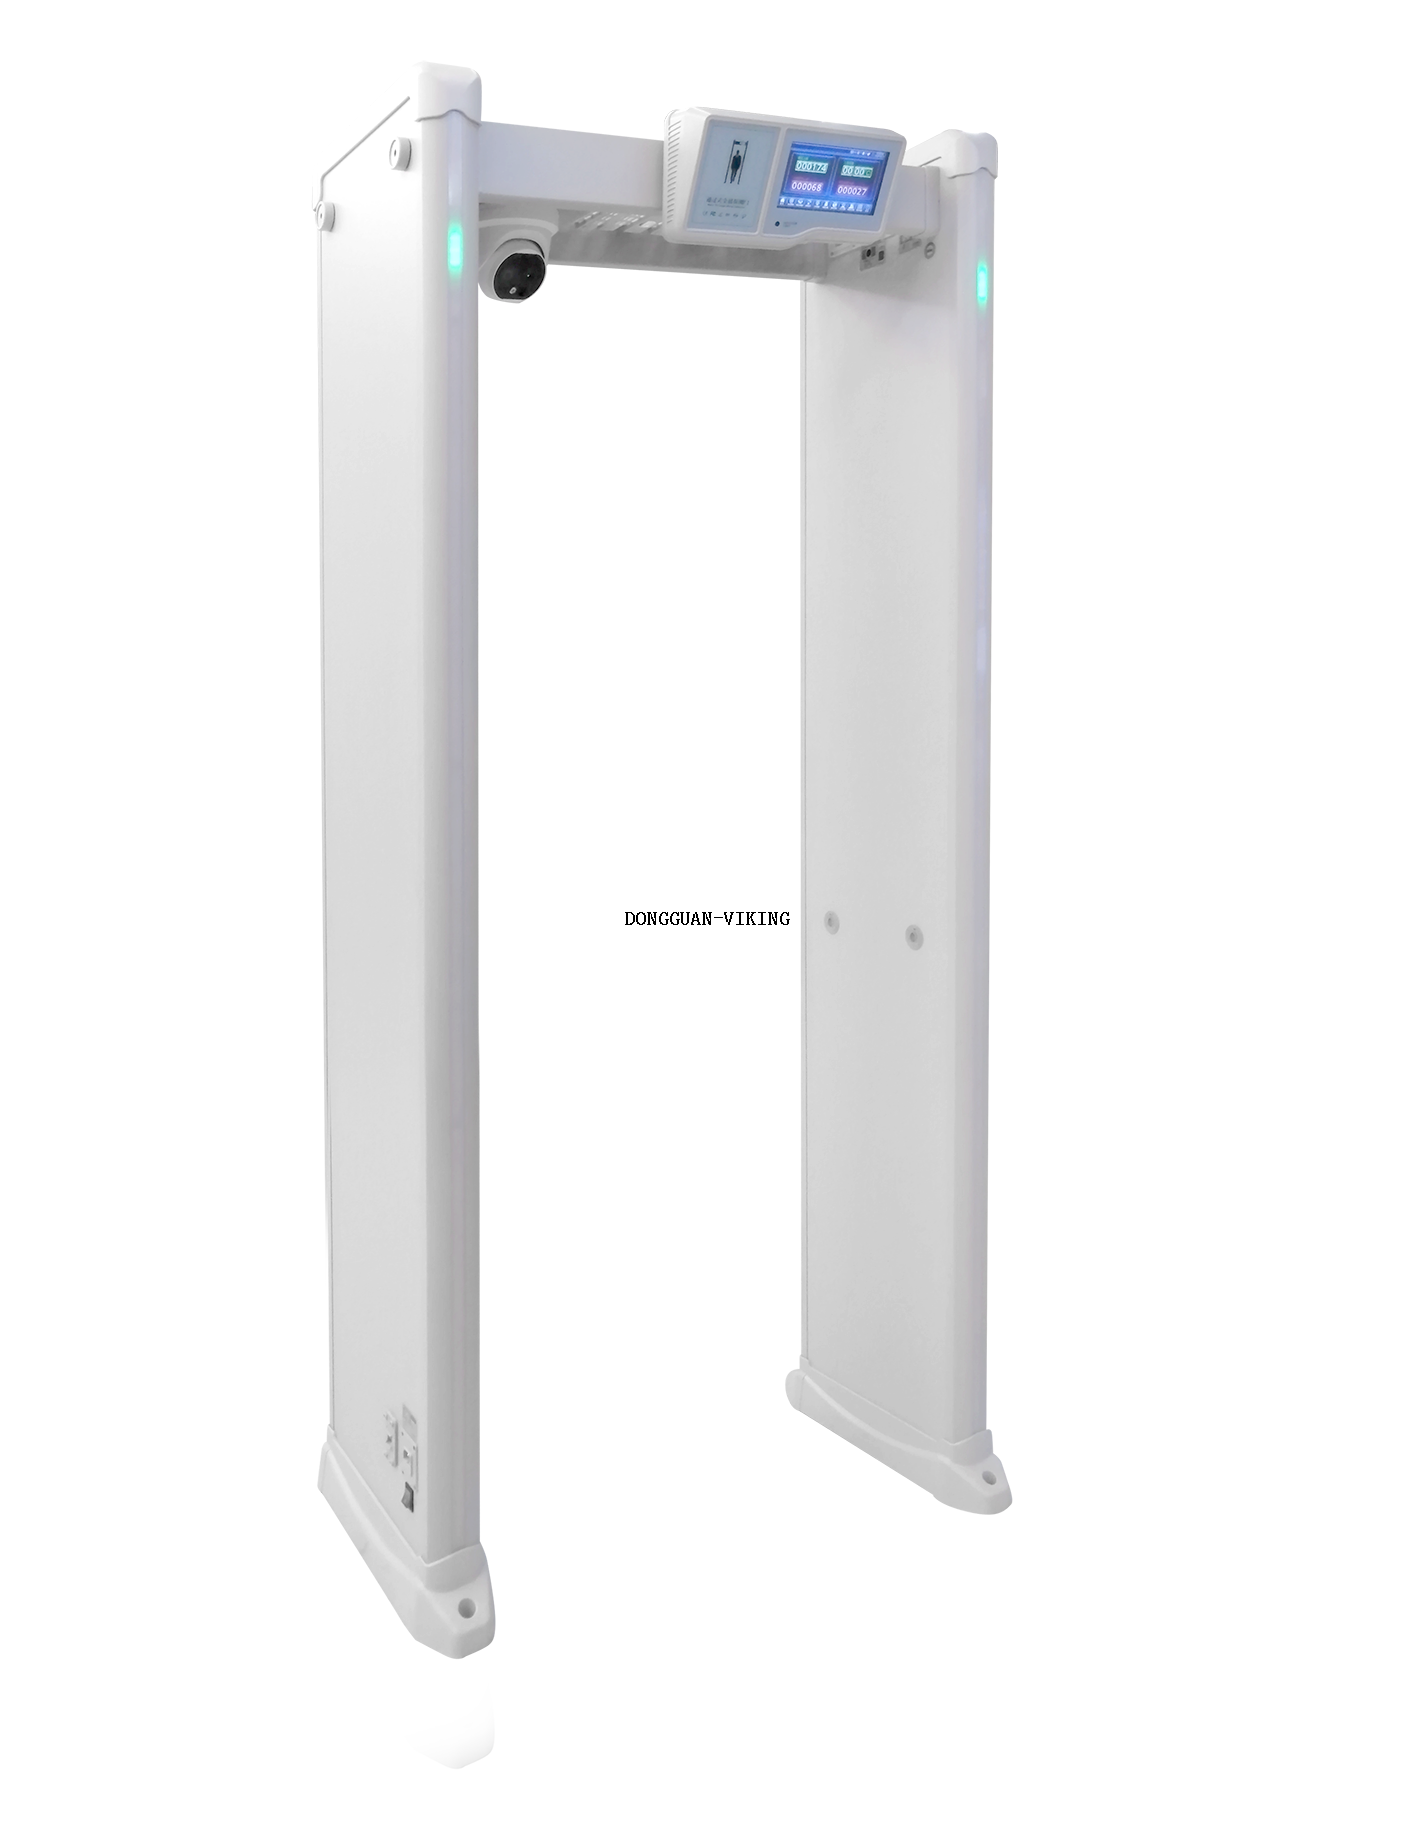 Scanner de temperatura corporal do caixilho da porta com detecção térmica